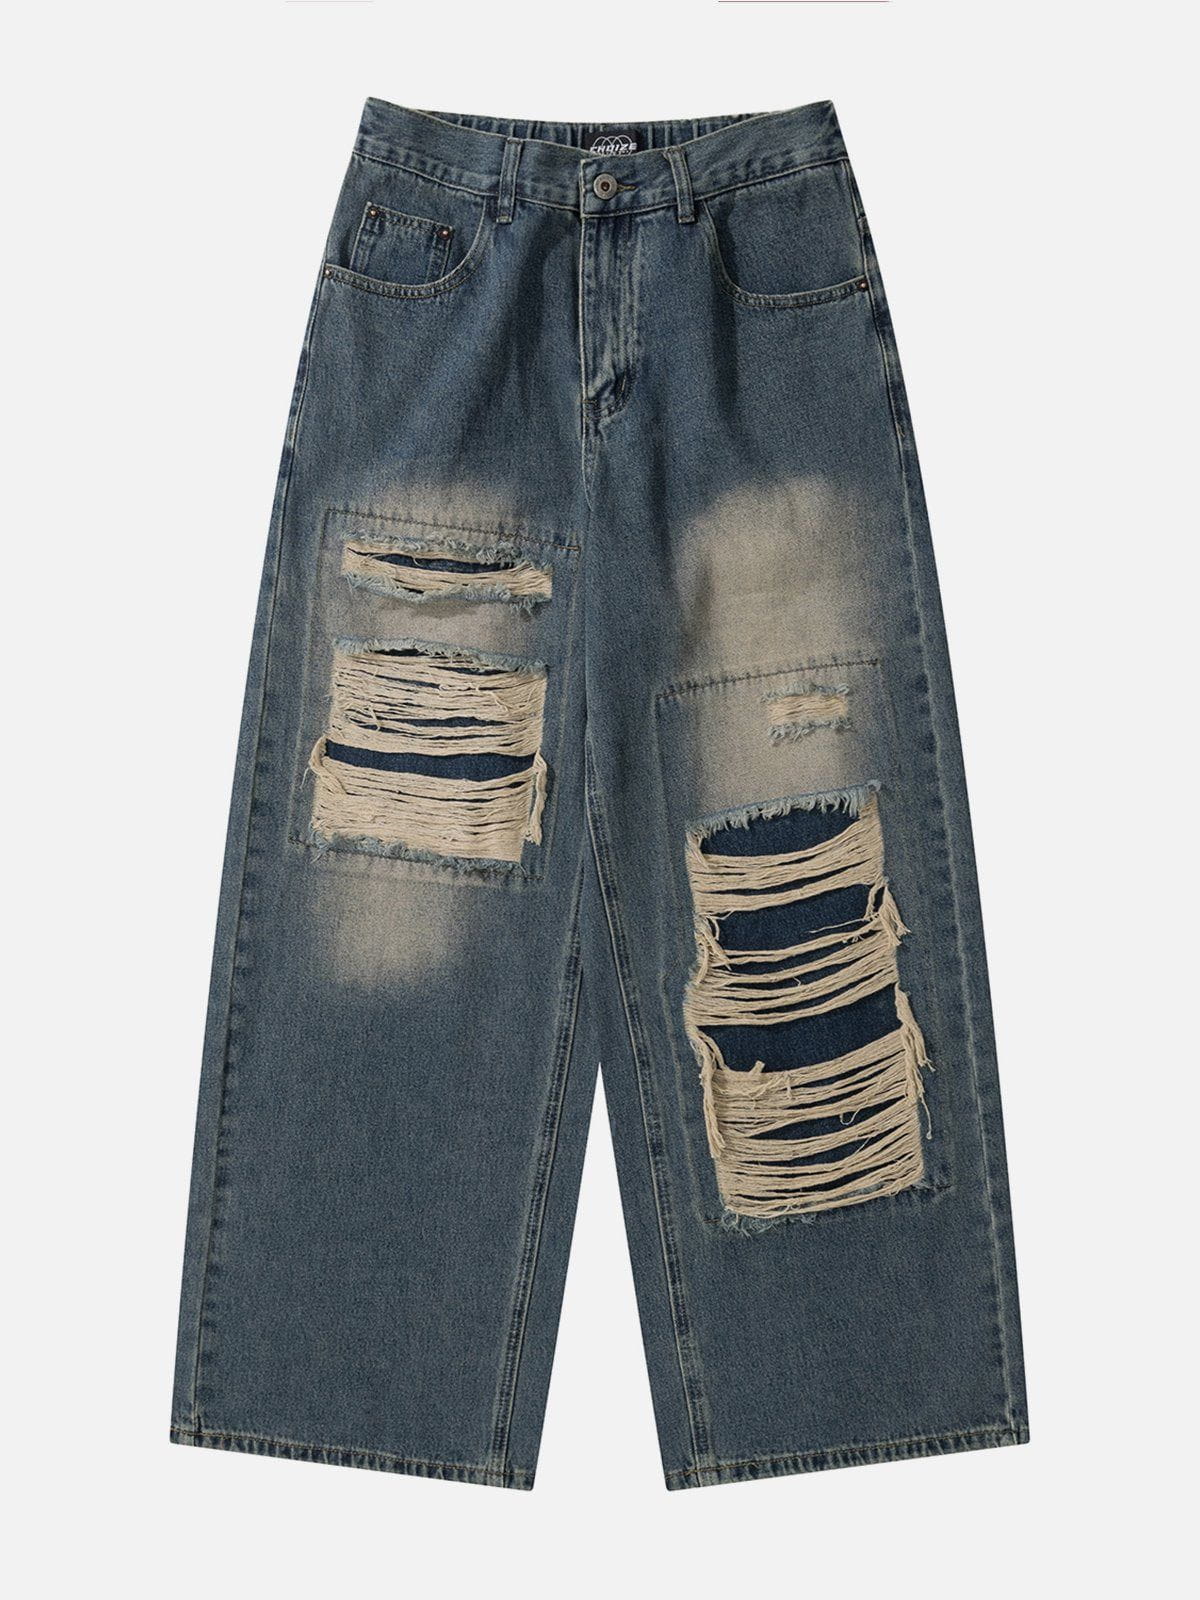 Eprezzy® - Distressed Design Jeans Streetwear Fashion - eprezzy.com